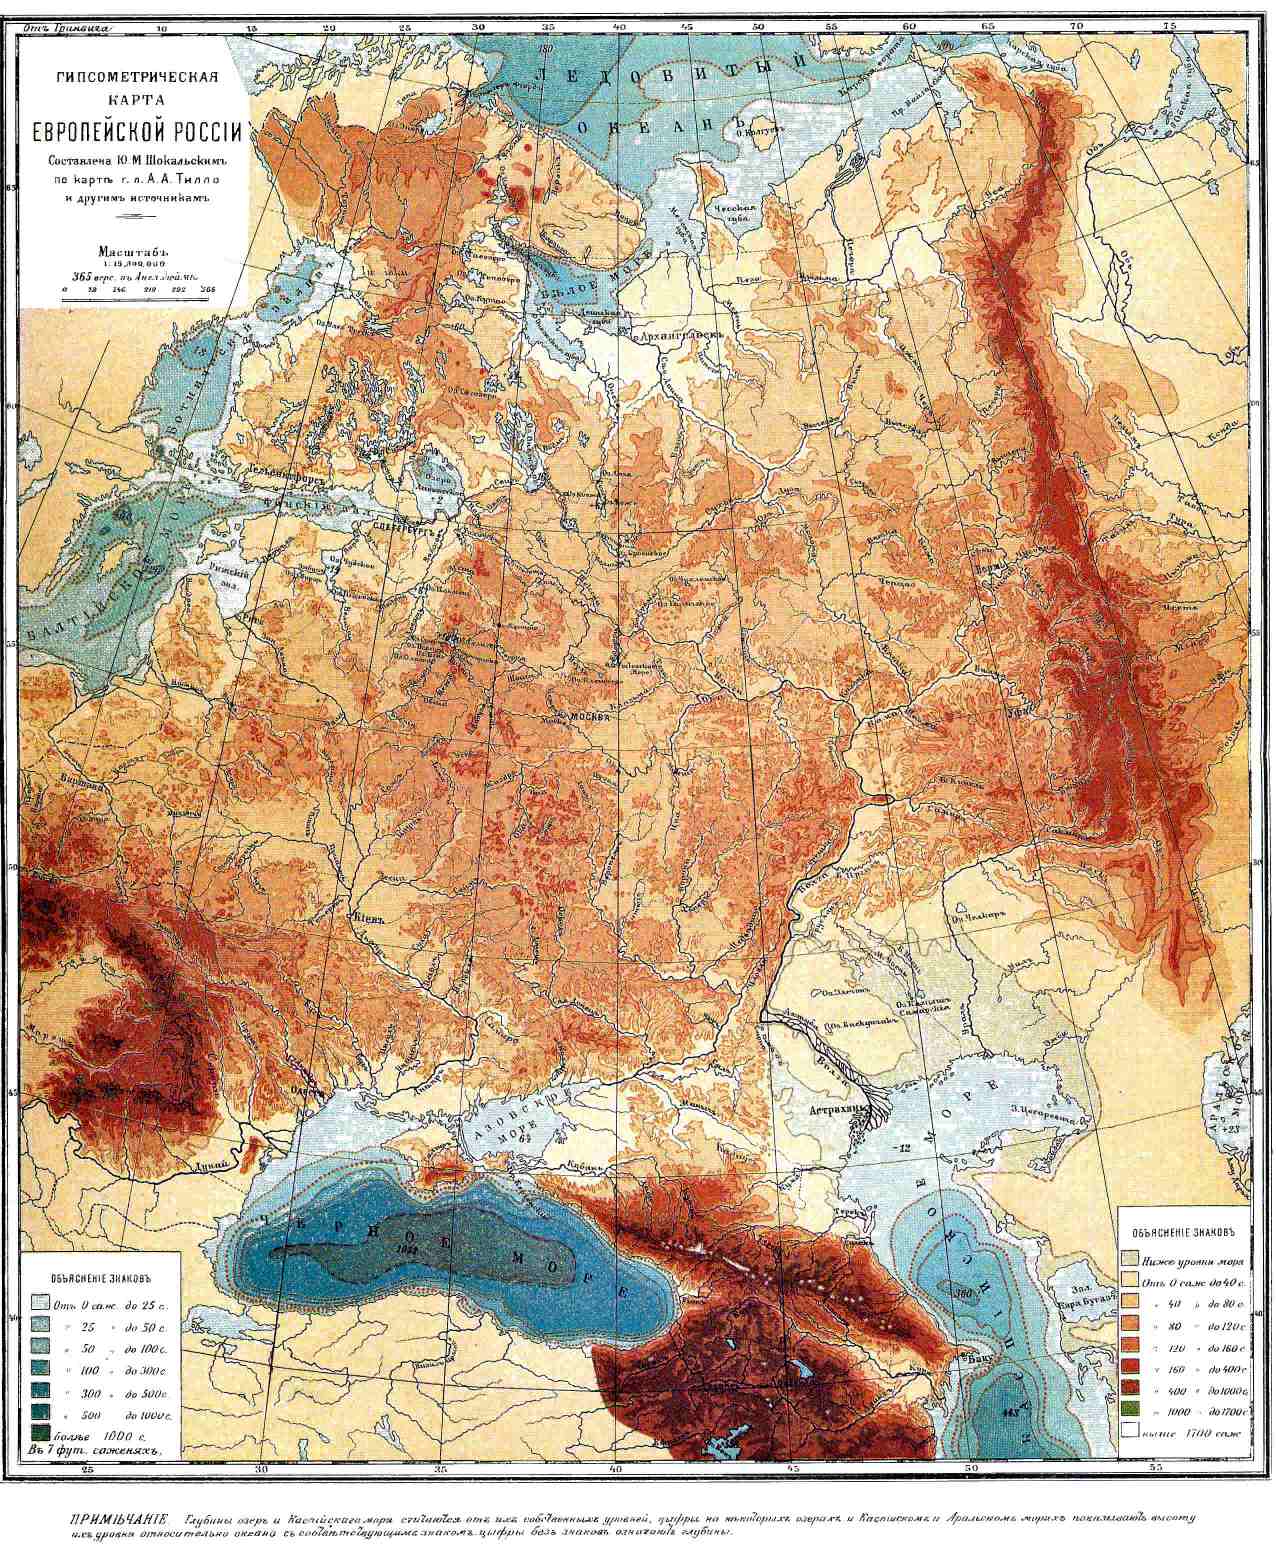 Гипсометрическая карта Европейской России (по карте А. А. Тилло).